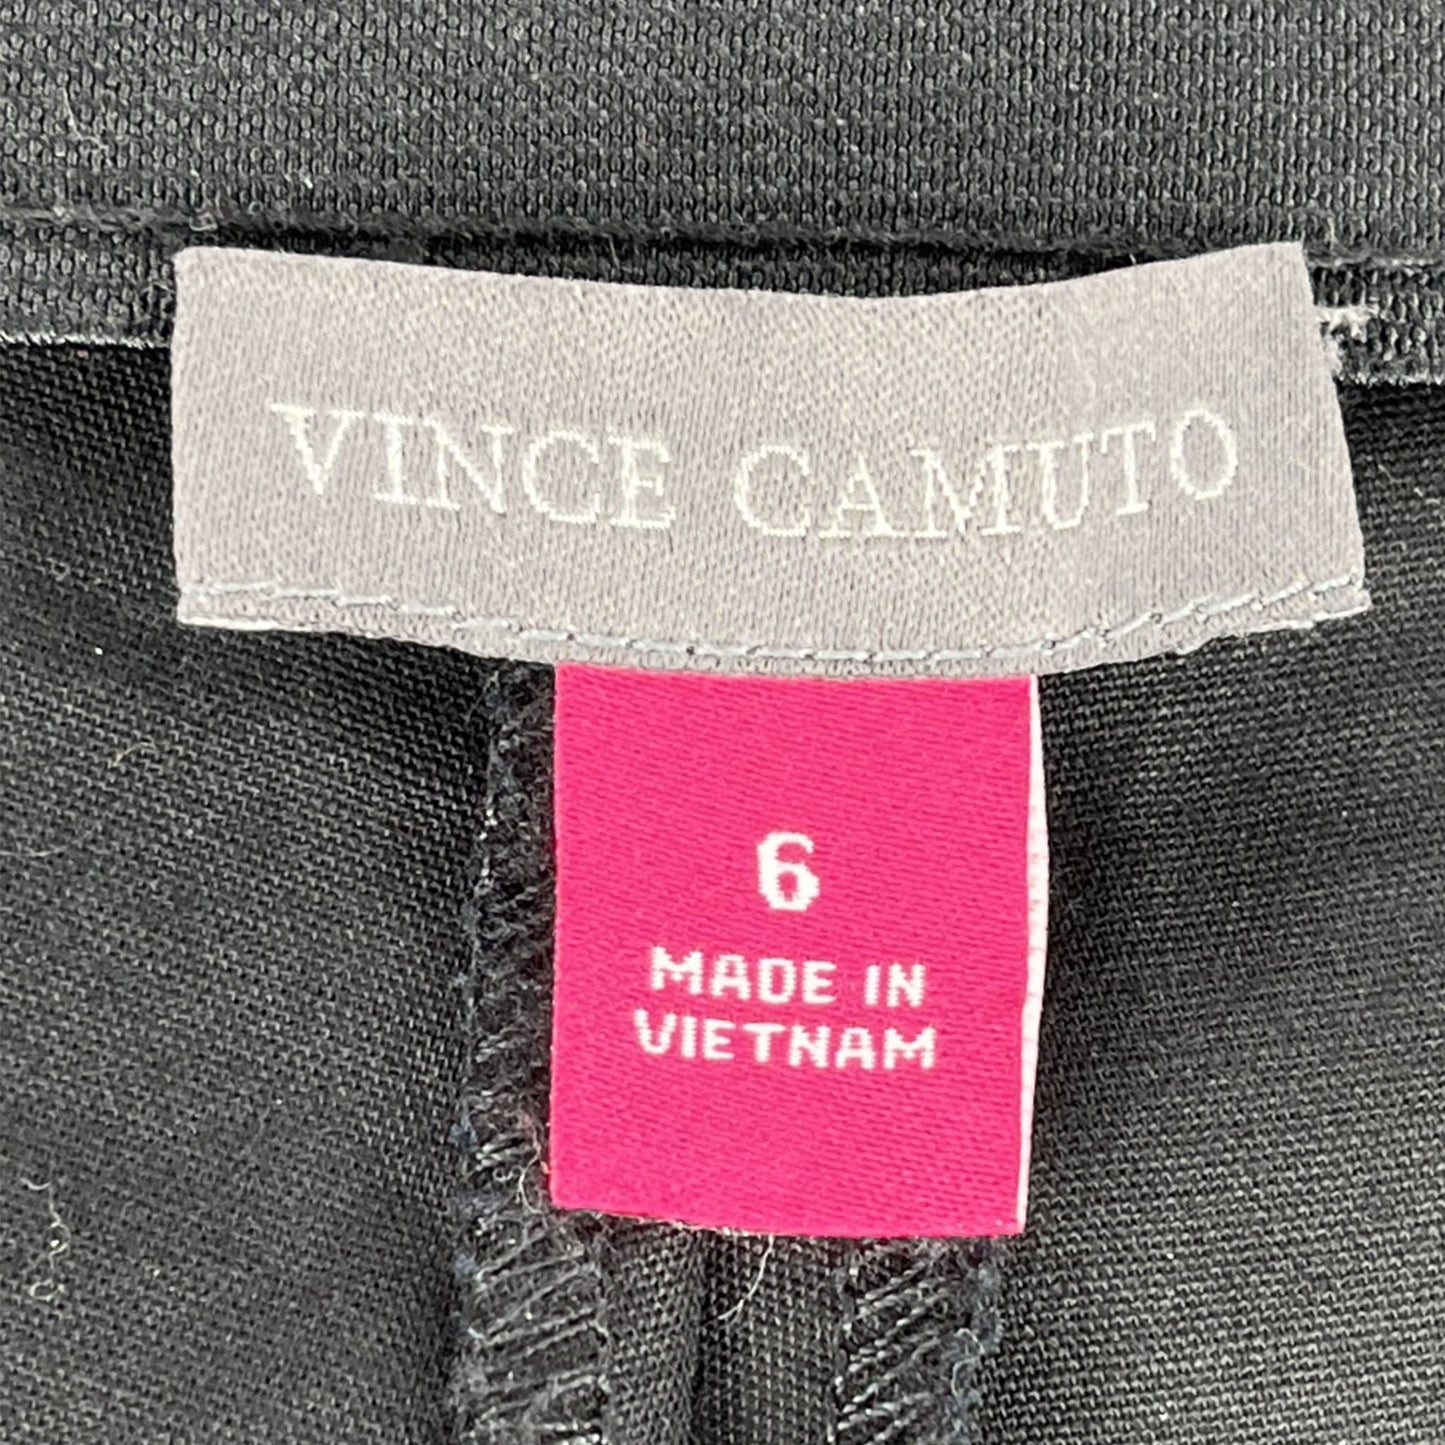 Vince Camuto Capri Pants Stretch Black Size 6 SKU 000415